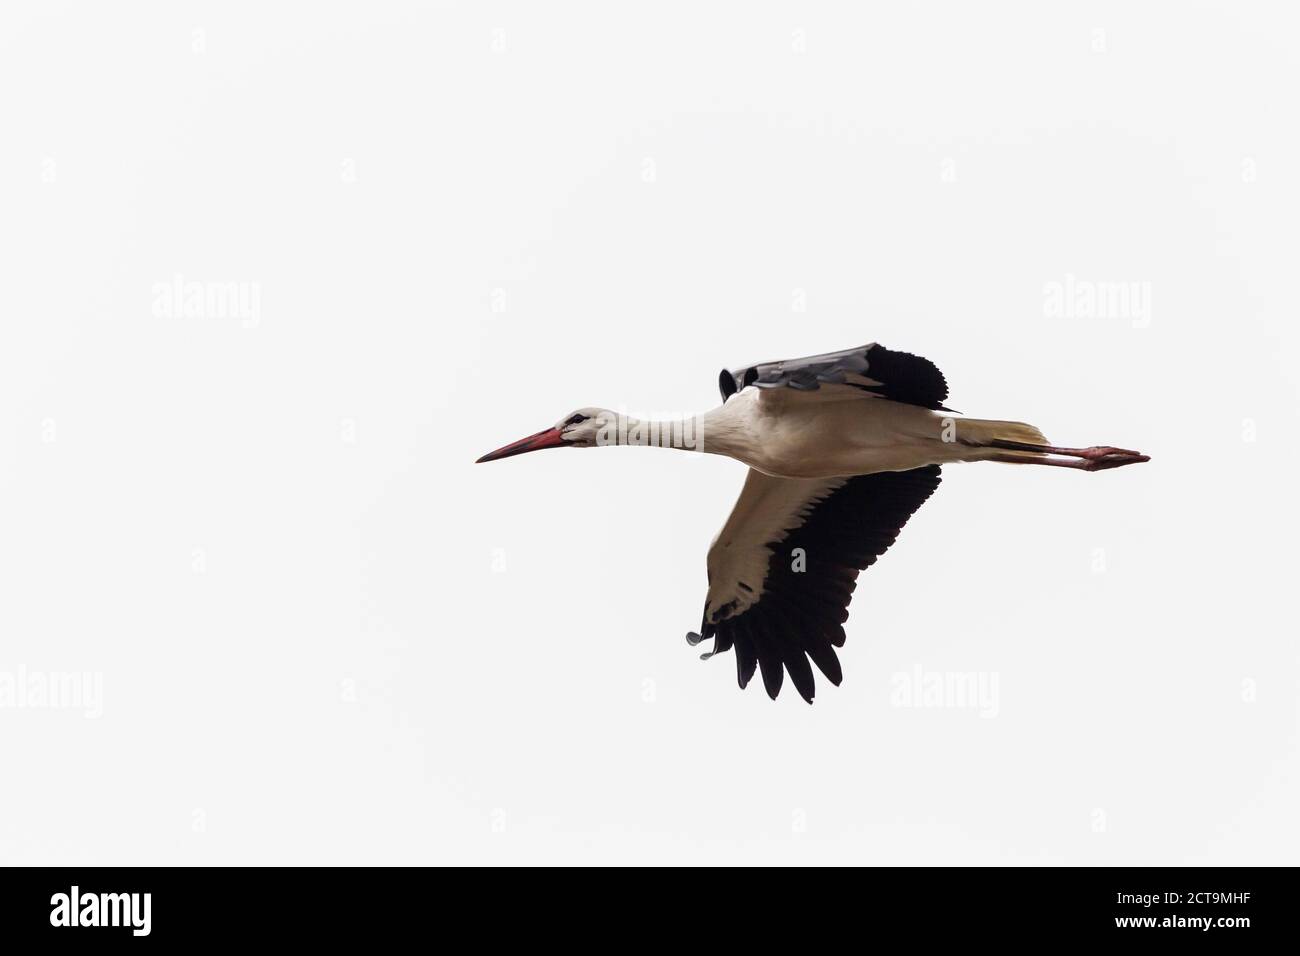 Germany, Flying stork Stock Photo